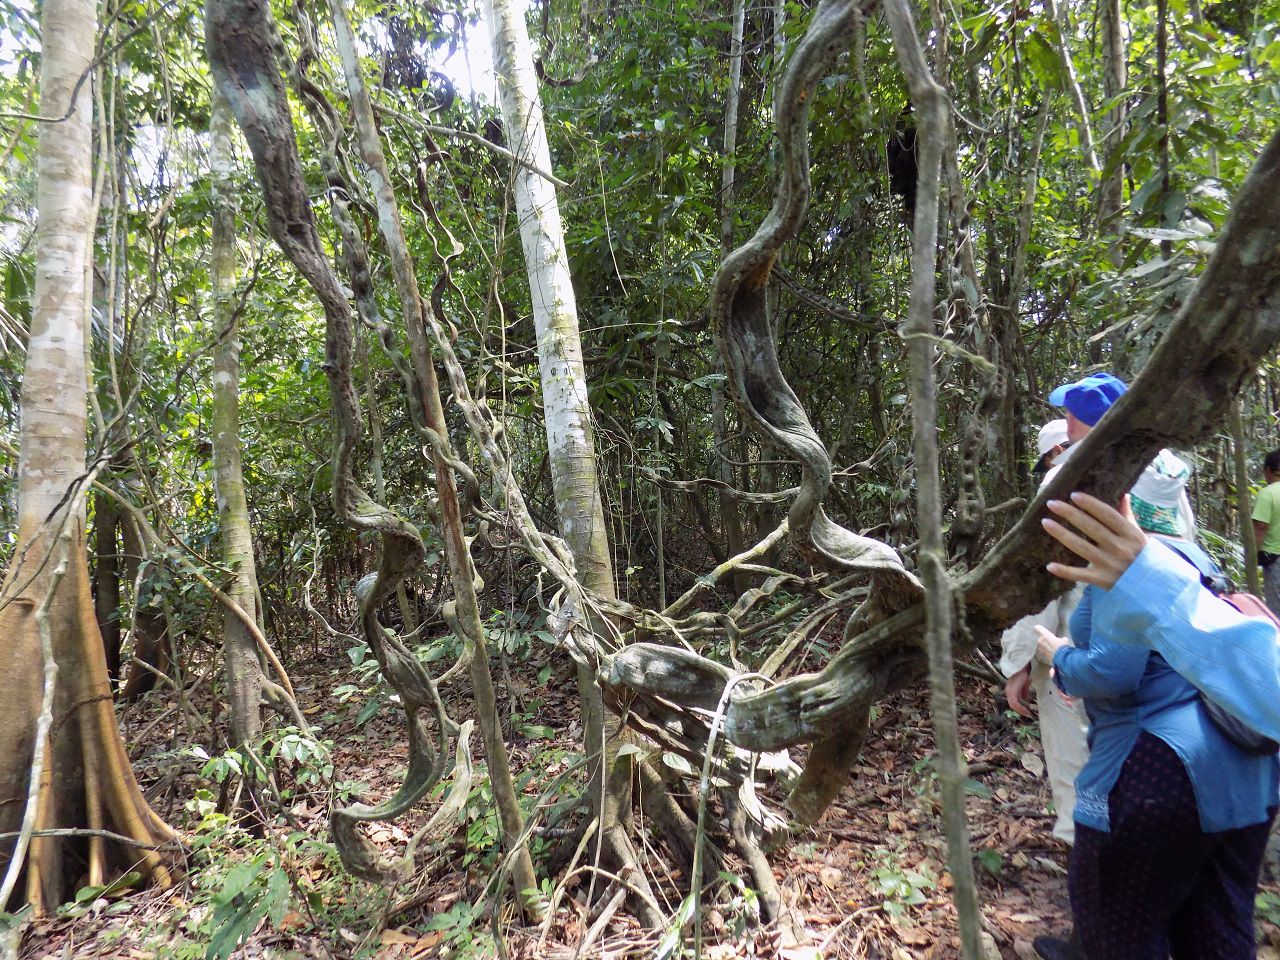 Курандеро периодически уходят в джунгли в одиночку на месяц и более, что бы очиститься, восстановиться и изучить растения  - Айяуаска.